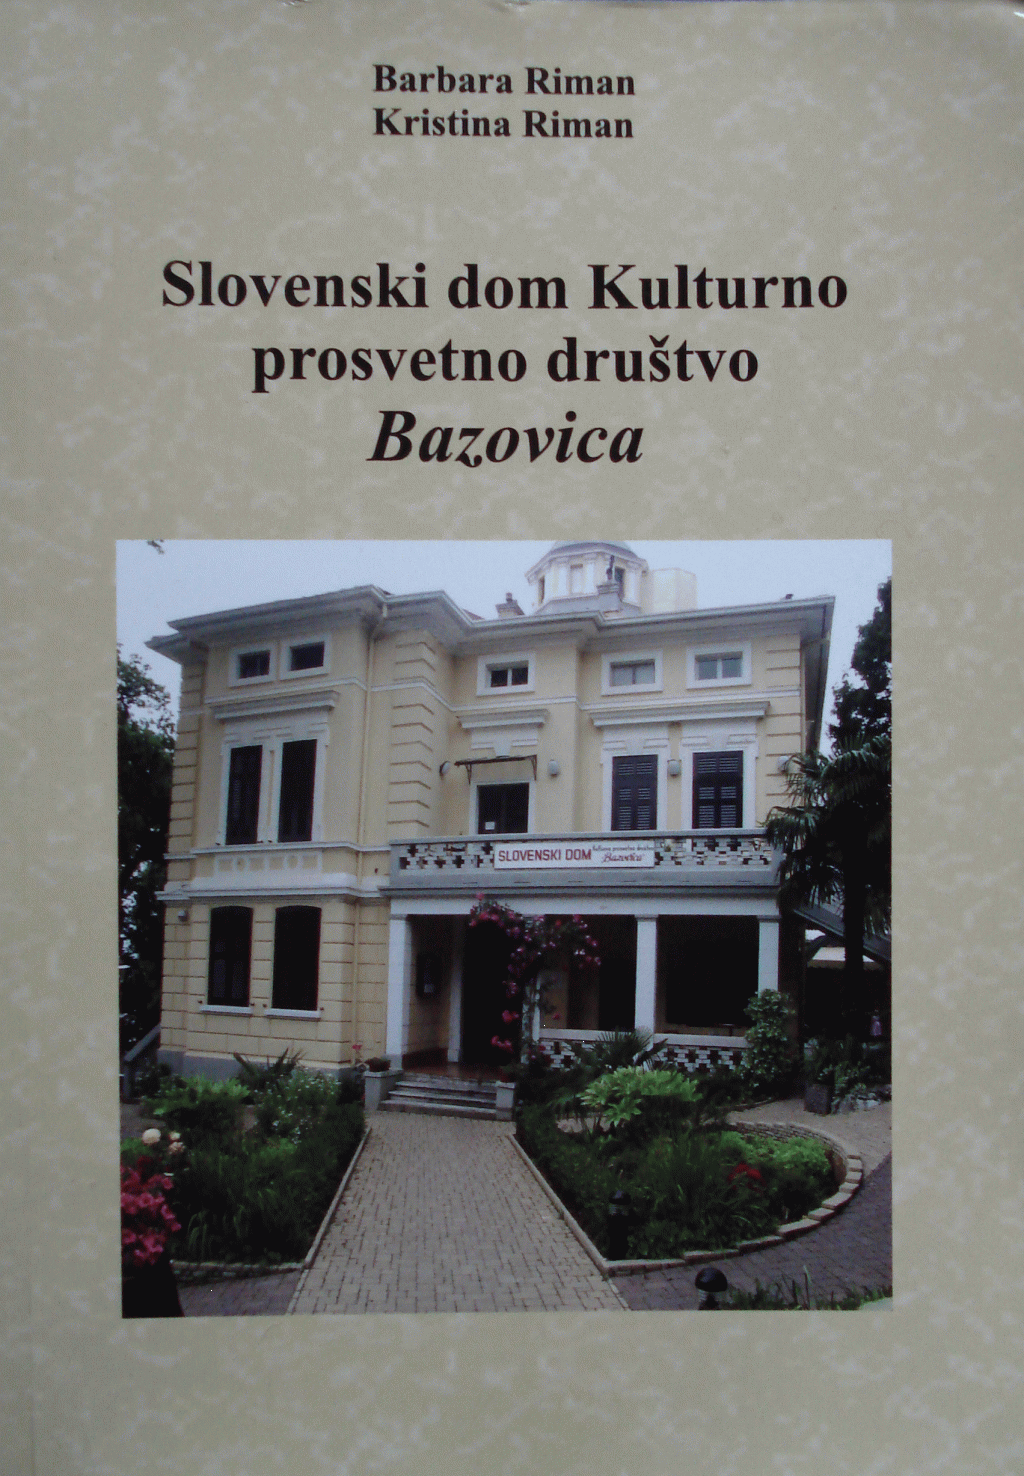 Slovenski dom Kulturno prosvetno društvo Bazovica